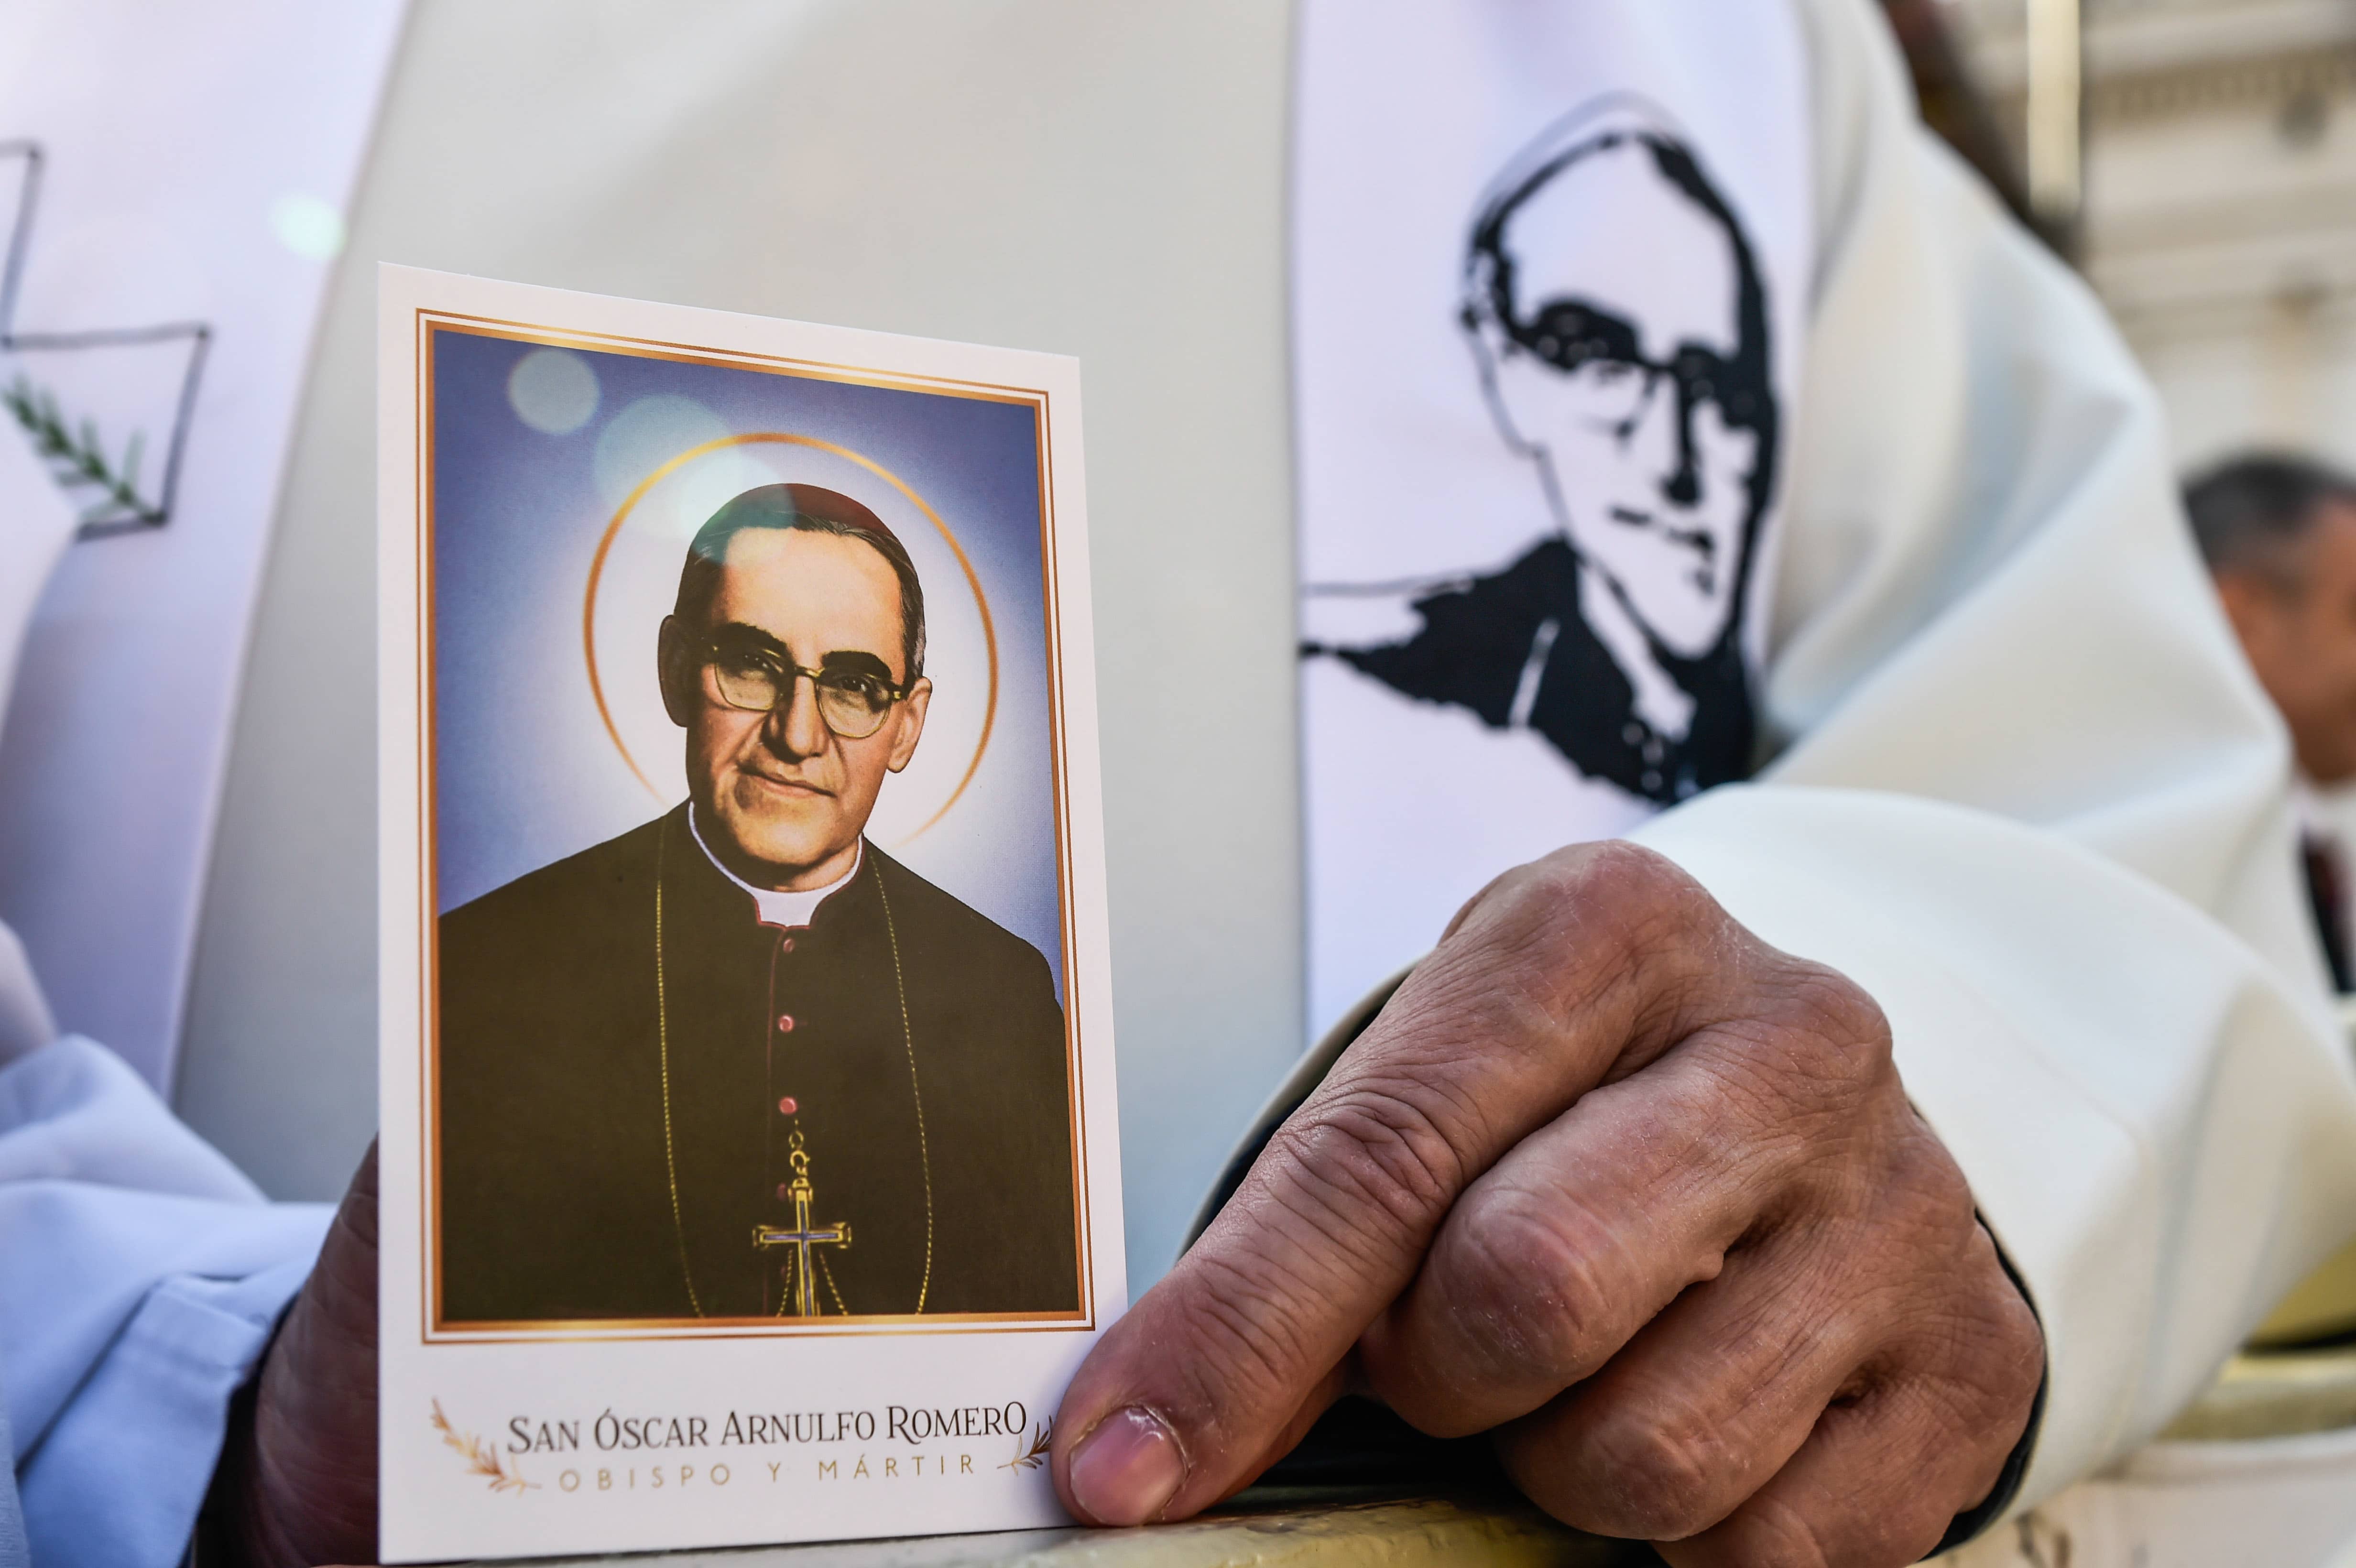 Priester mit einem Bild von Oscar Romero, Erzbischof von San Salvador, bei dessen Heiligsprechung und der von sechs weiteren Seligen, am 14. Oktober 2018 im Vatikan. Auf die Stola ist ein Porträt von Romero gestickt.